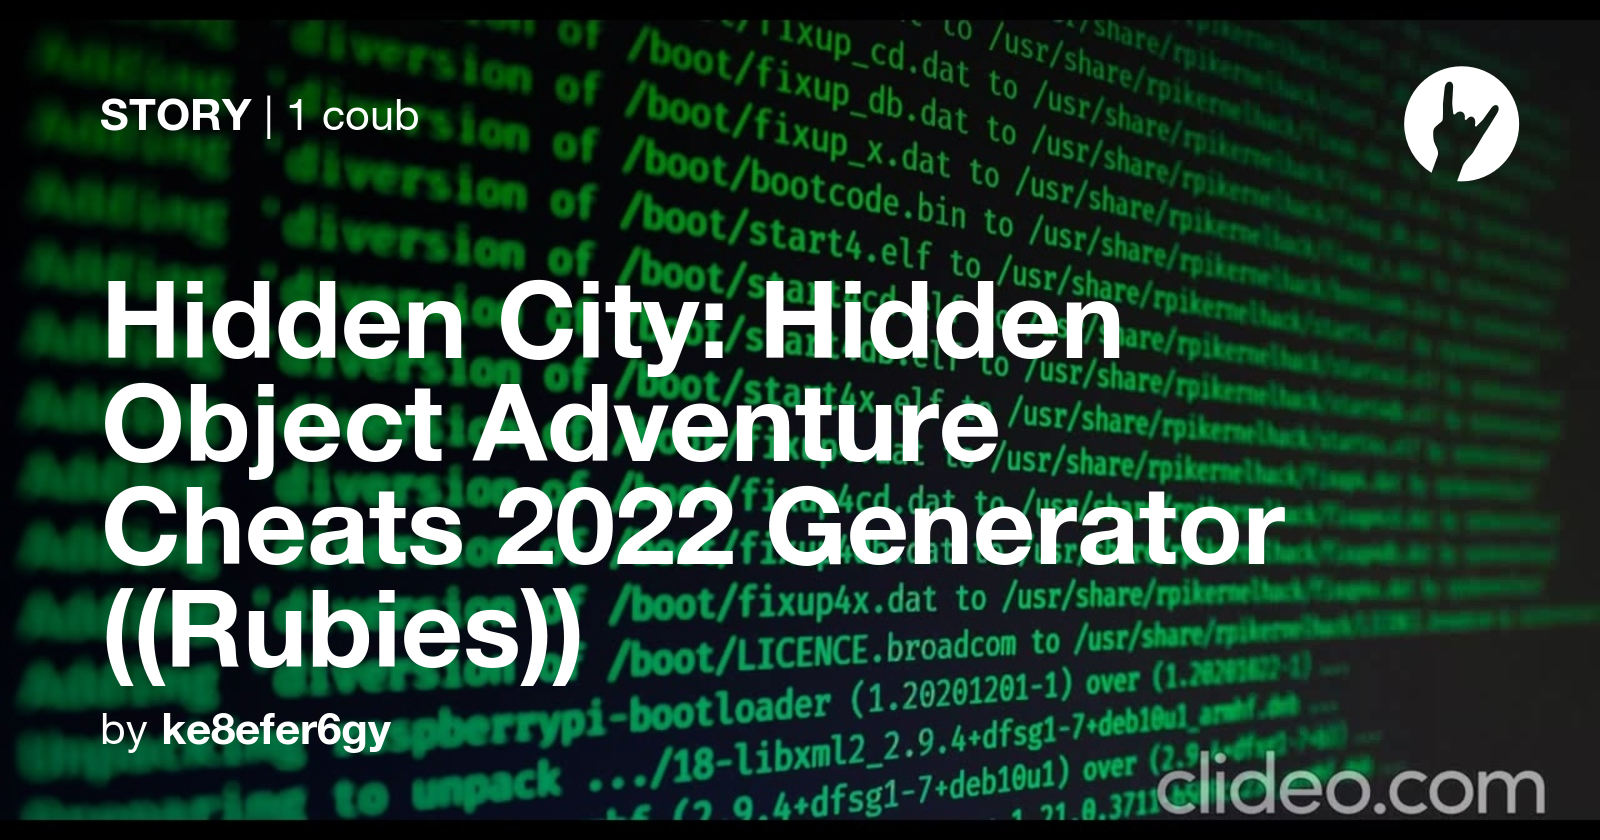 hidden city hidden object adventure cheats rubies